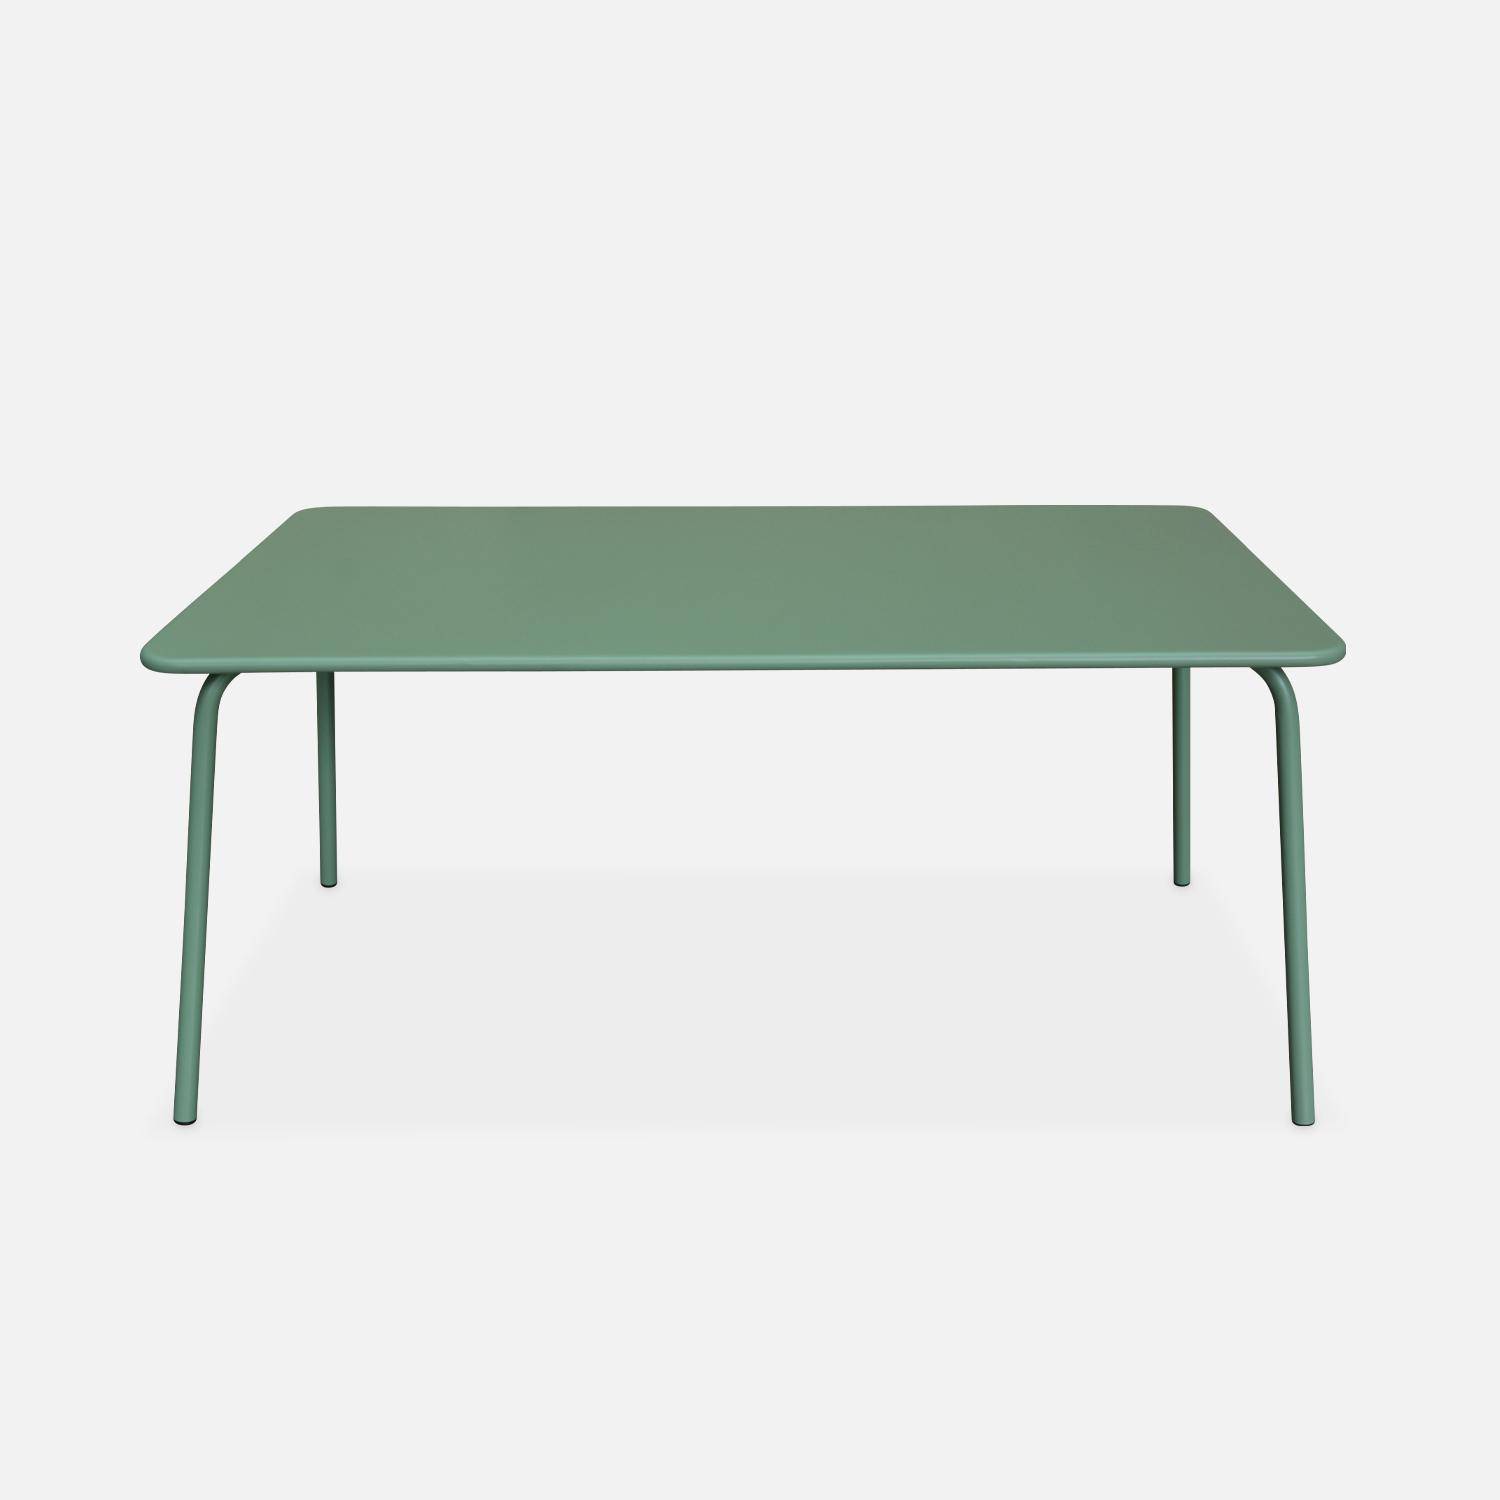 Table de jardin en métal (acier peint par électrophorèse avec protection antirouille) 160x90cm vert jade,sweeek,Photo2